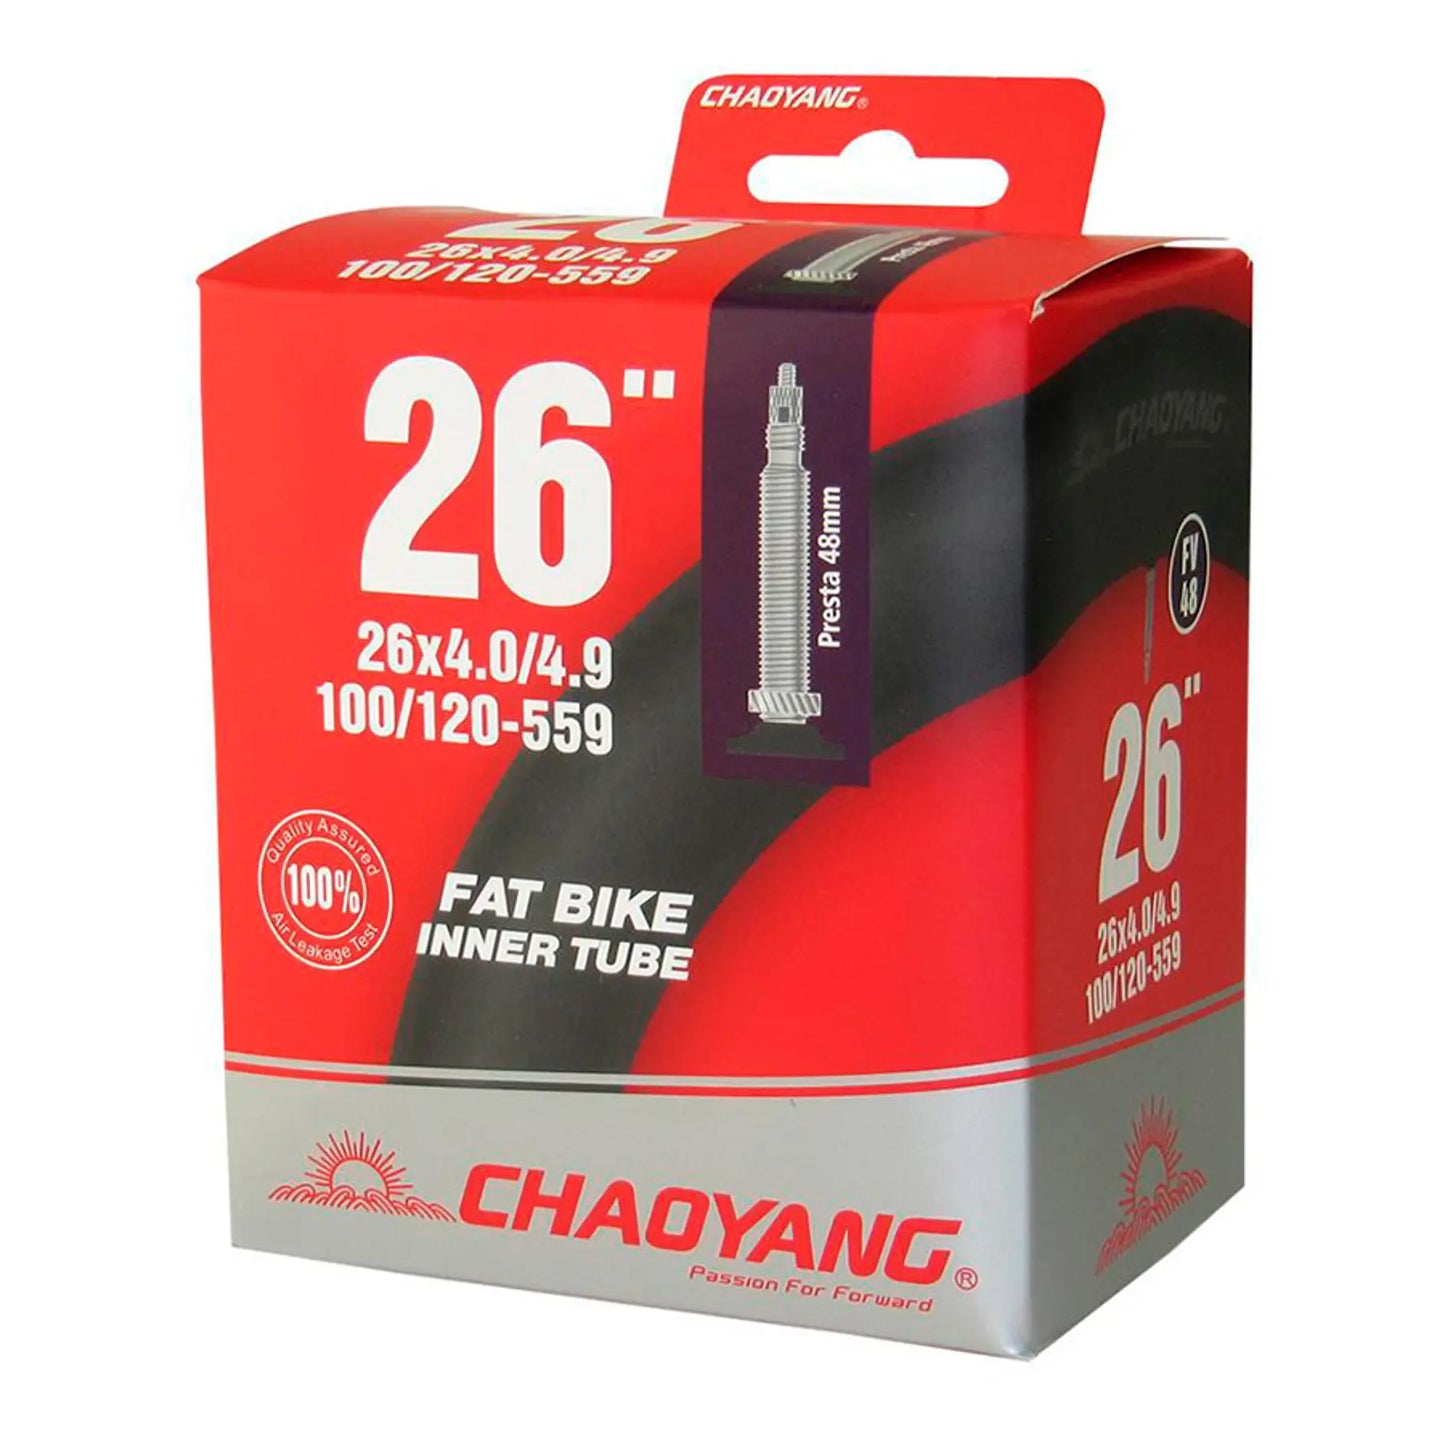 Camara Chaoyang Fat Bike 26x4,0